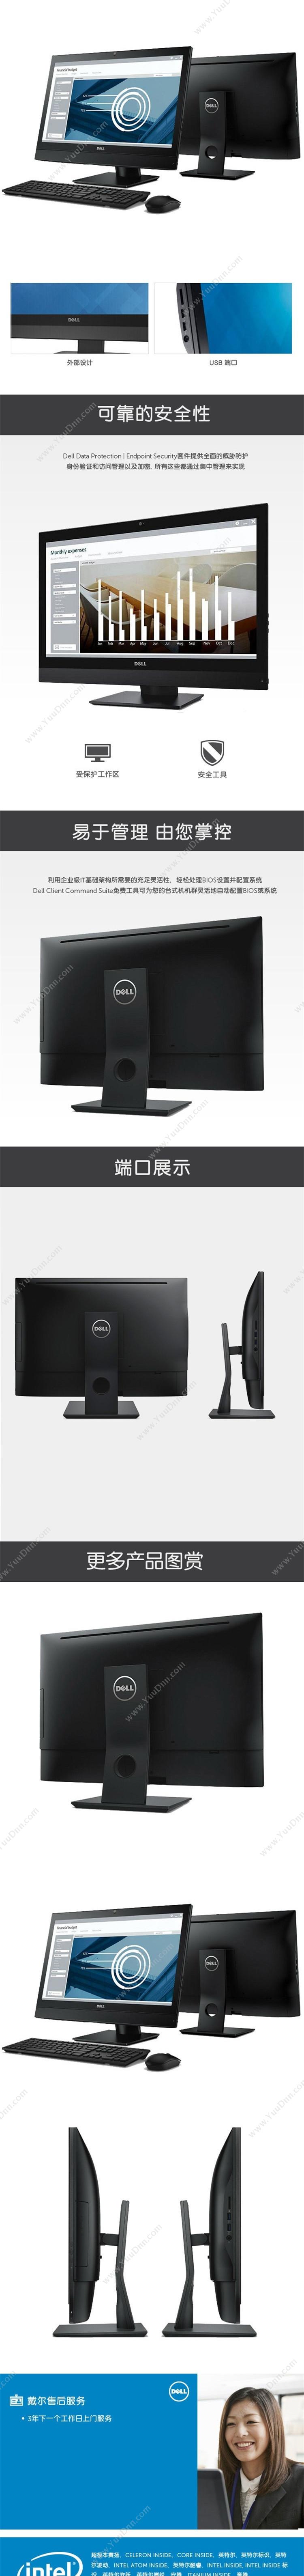 戴尔 Dell 7450 AIO  23.8英寸I78G1TRW2G独显W10H3Y 台式一体机